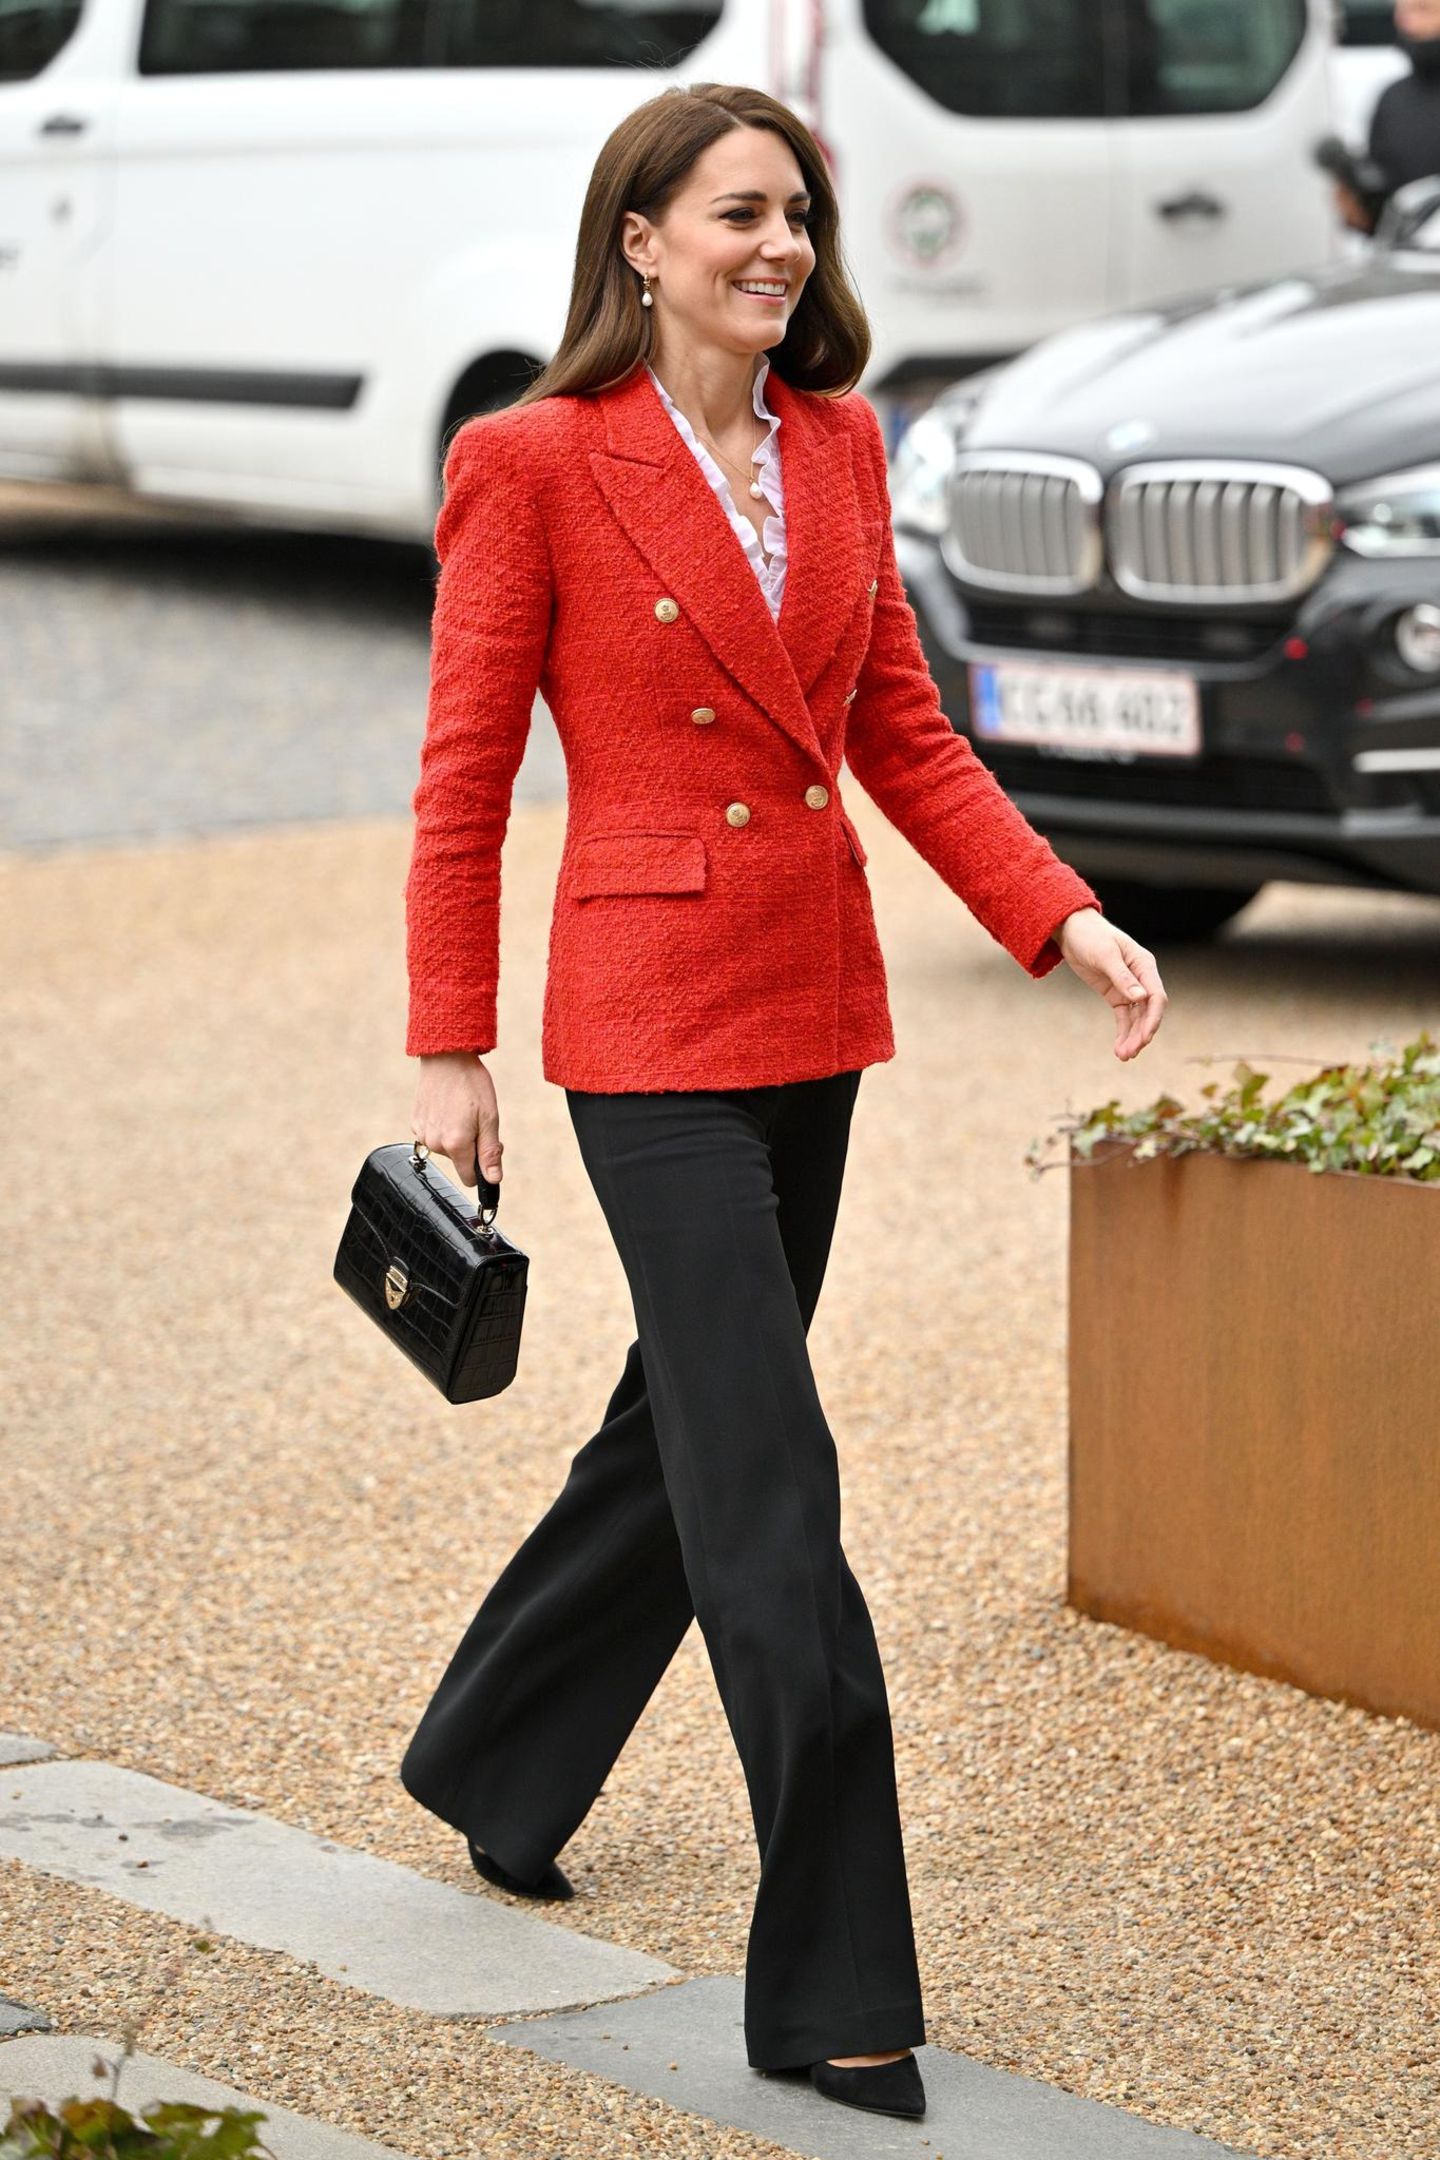 Vom 22. bis 23. Februar besucht Herzogin Catherine Kopenhagen. Für ihren ersten Auftritt setzt sie auf ein Teil, das sie schon einmal getragen hat: Den roten Blazer von Zara kombiniert sie zu einer schwarzen Hose, einer weißer Rüschenbluse und schwarzer Handtasche. Klassisch, elegant und stilvoll – so kennen wir Kate.